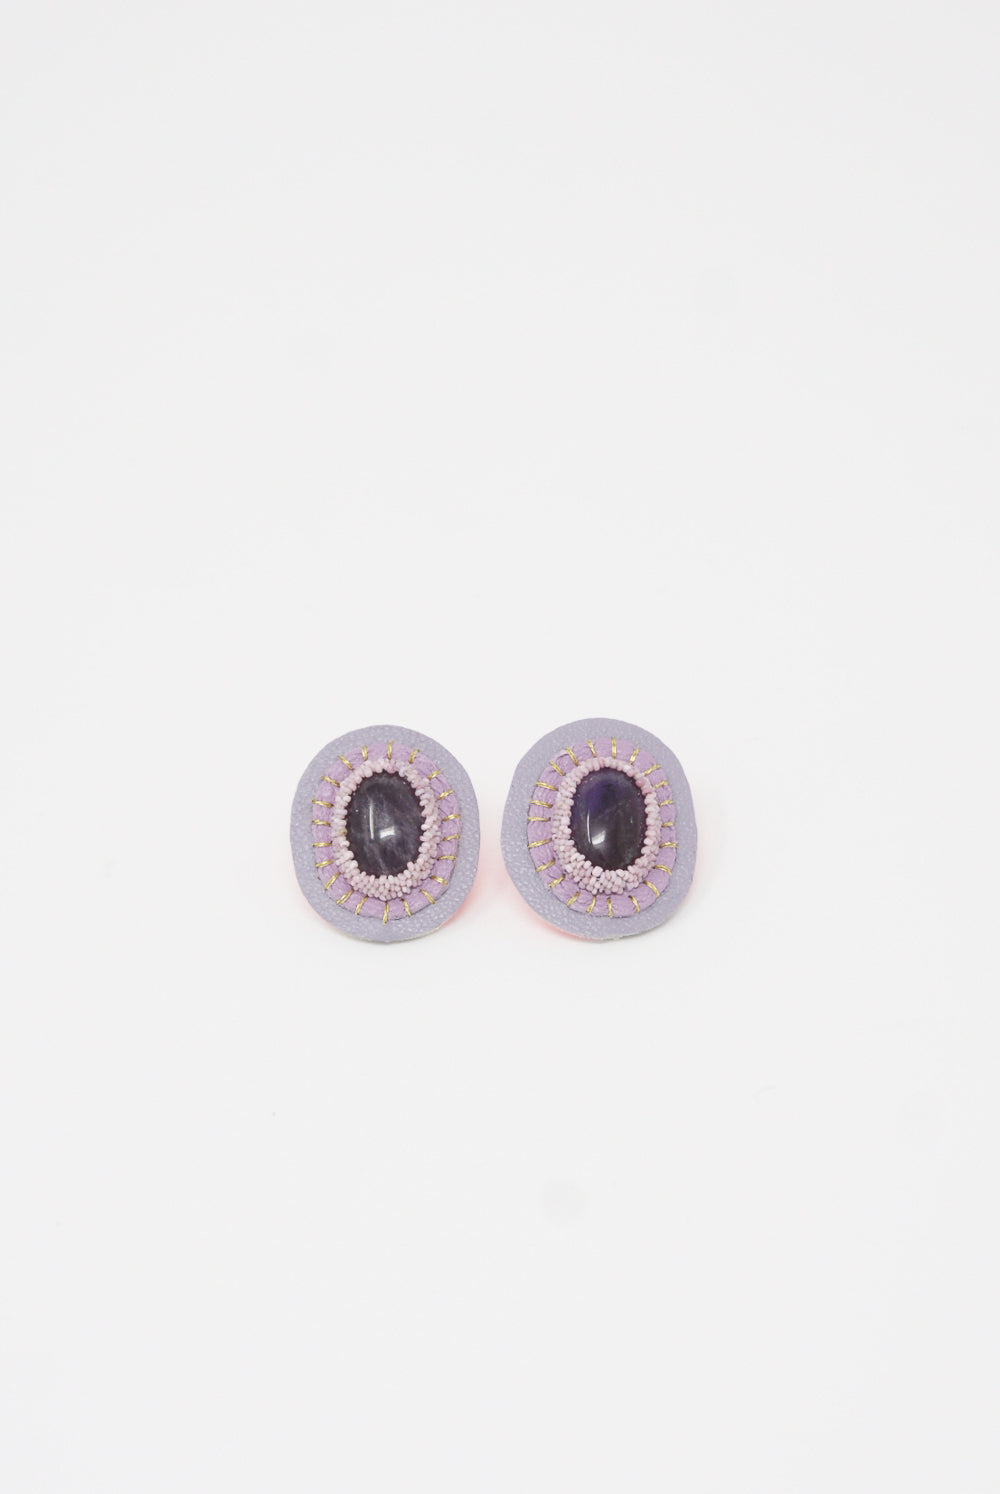 Robin Mollicone - Oval Earrings in Amethyst